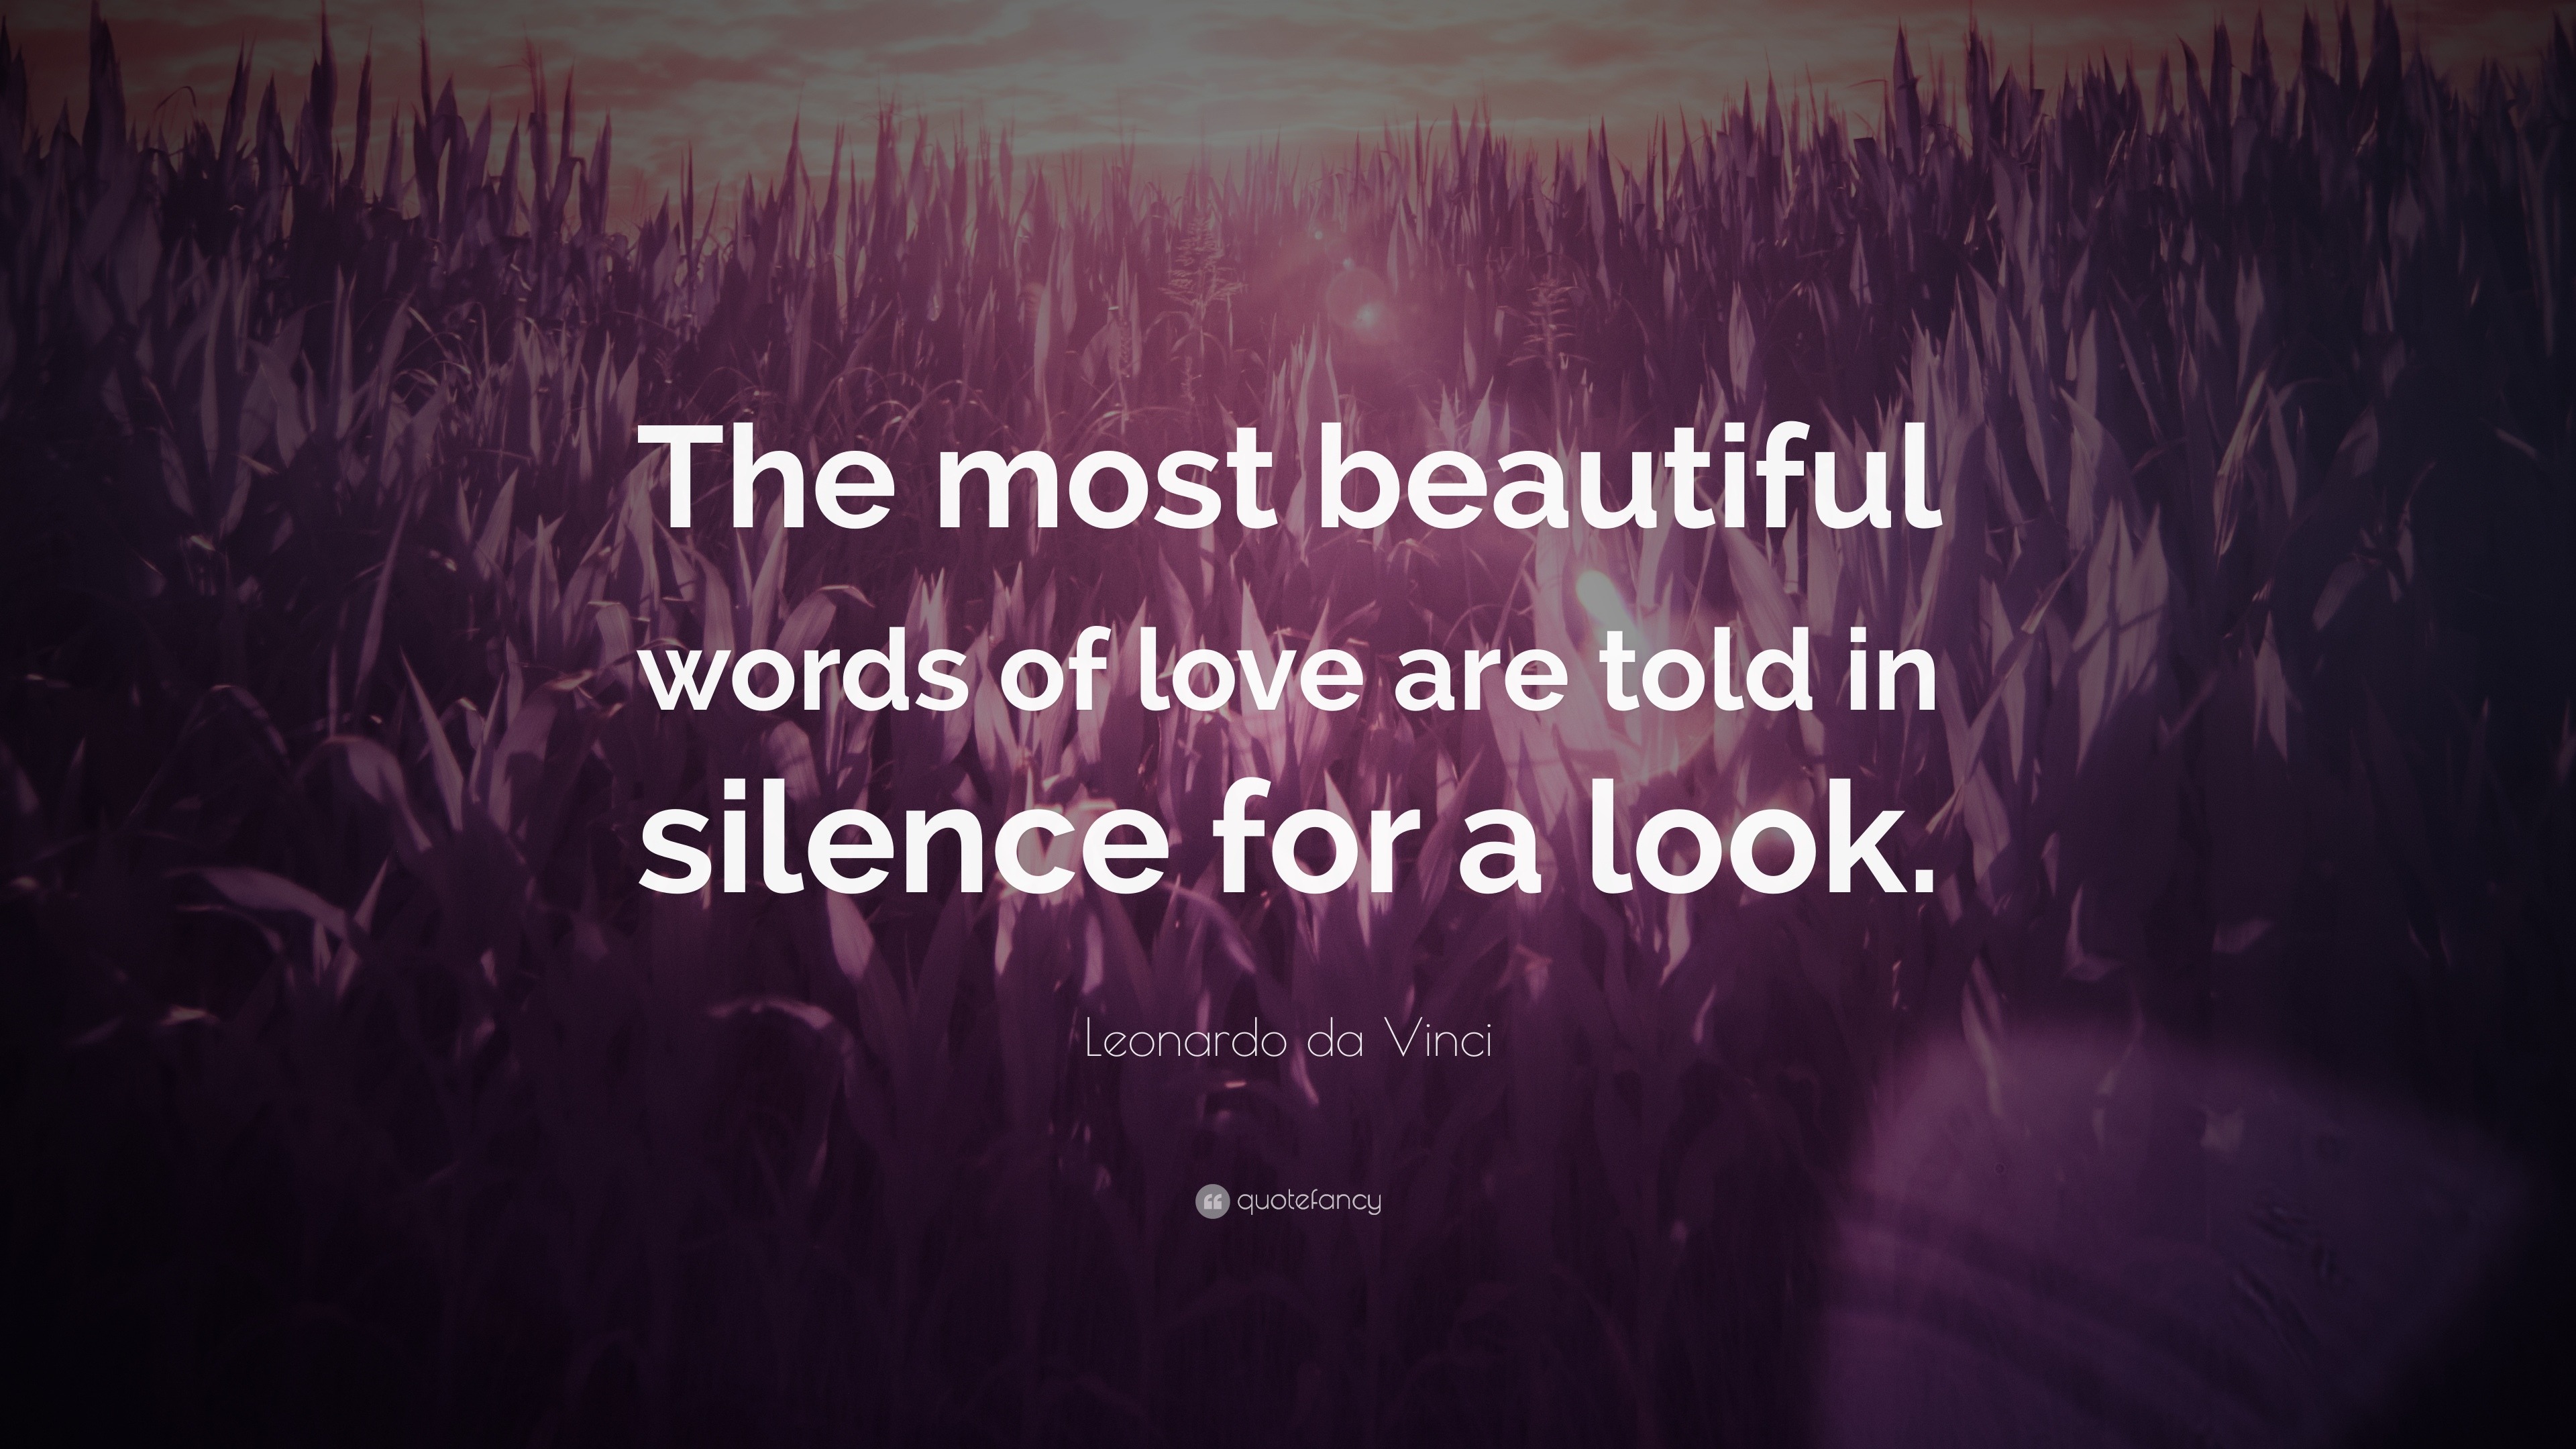 Leonardo da Vinci Quote: “The most beautiful words of love are told in